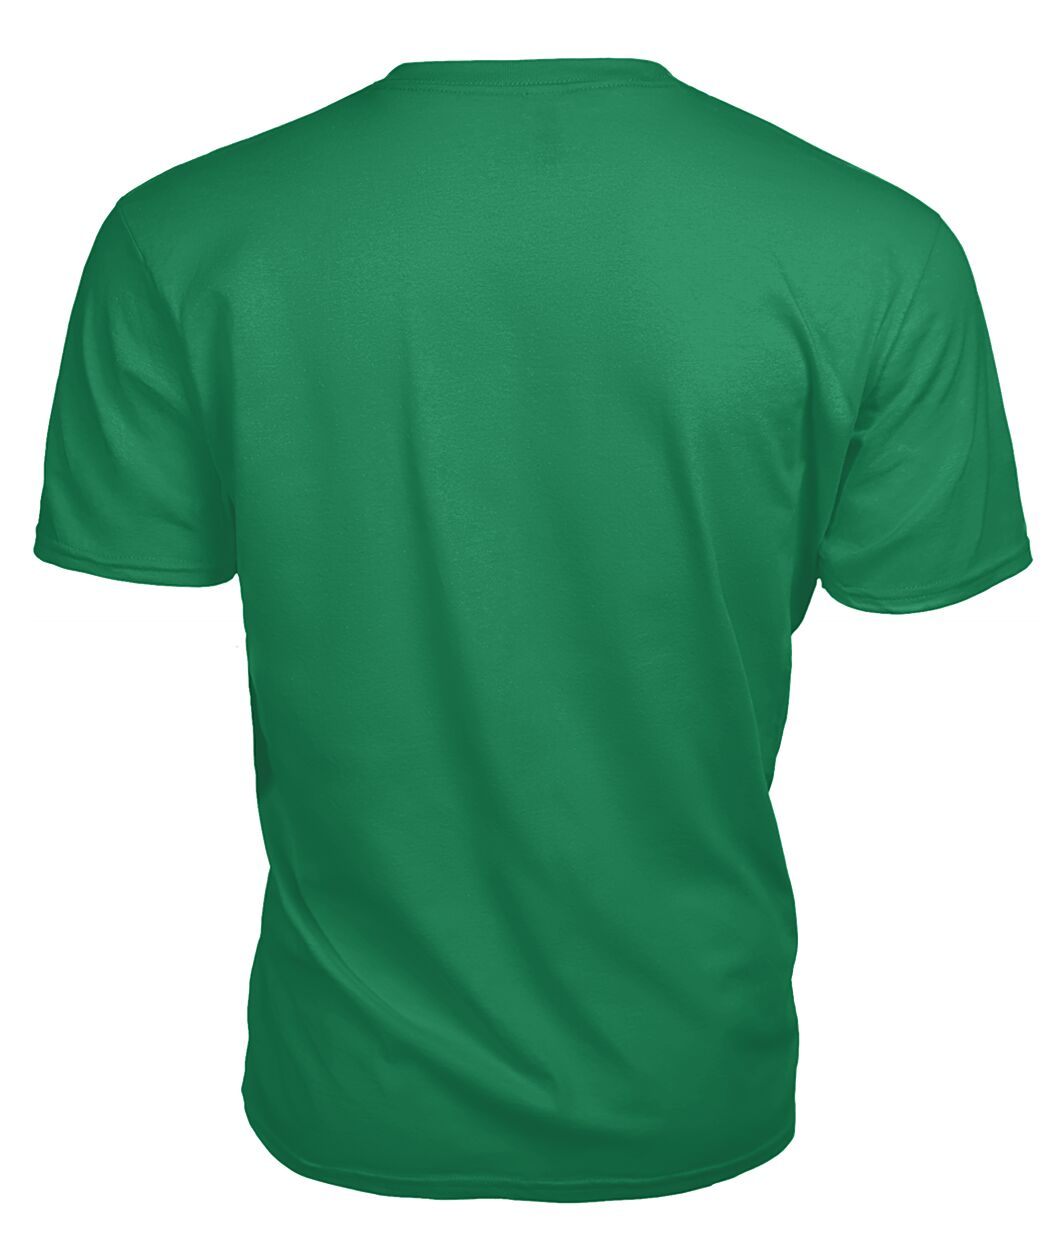 Pentland Family Tartan - 2D T-shirt